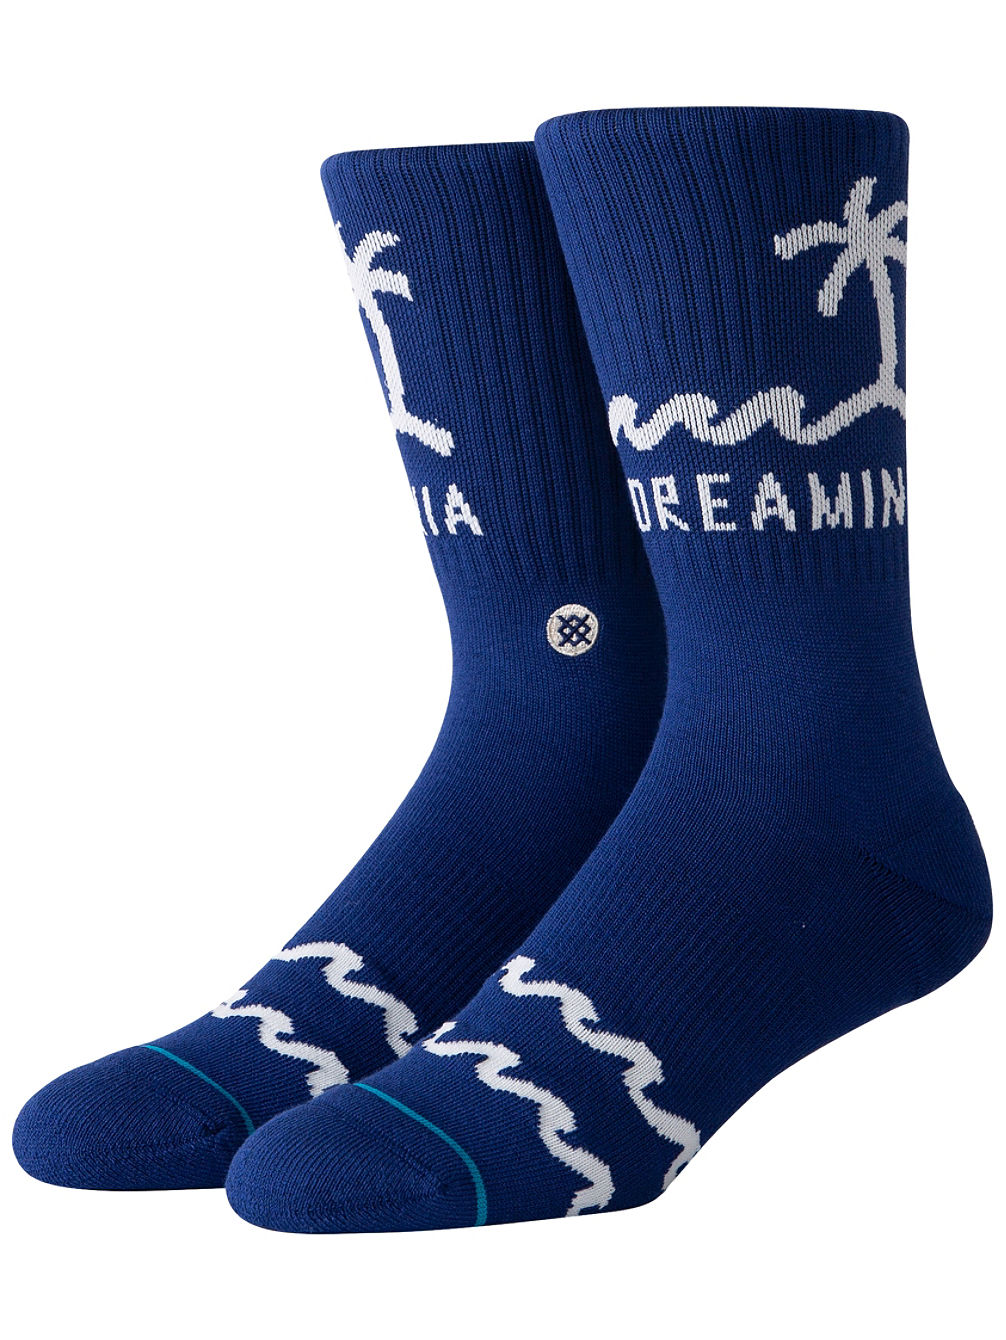 California Dreamin Socks